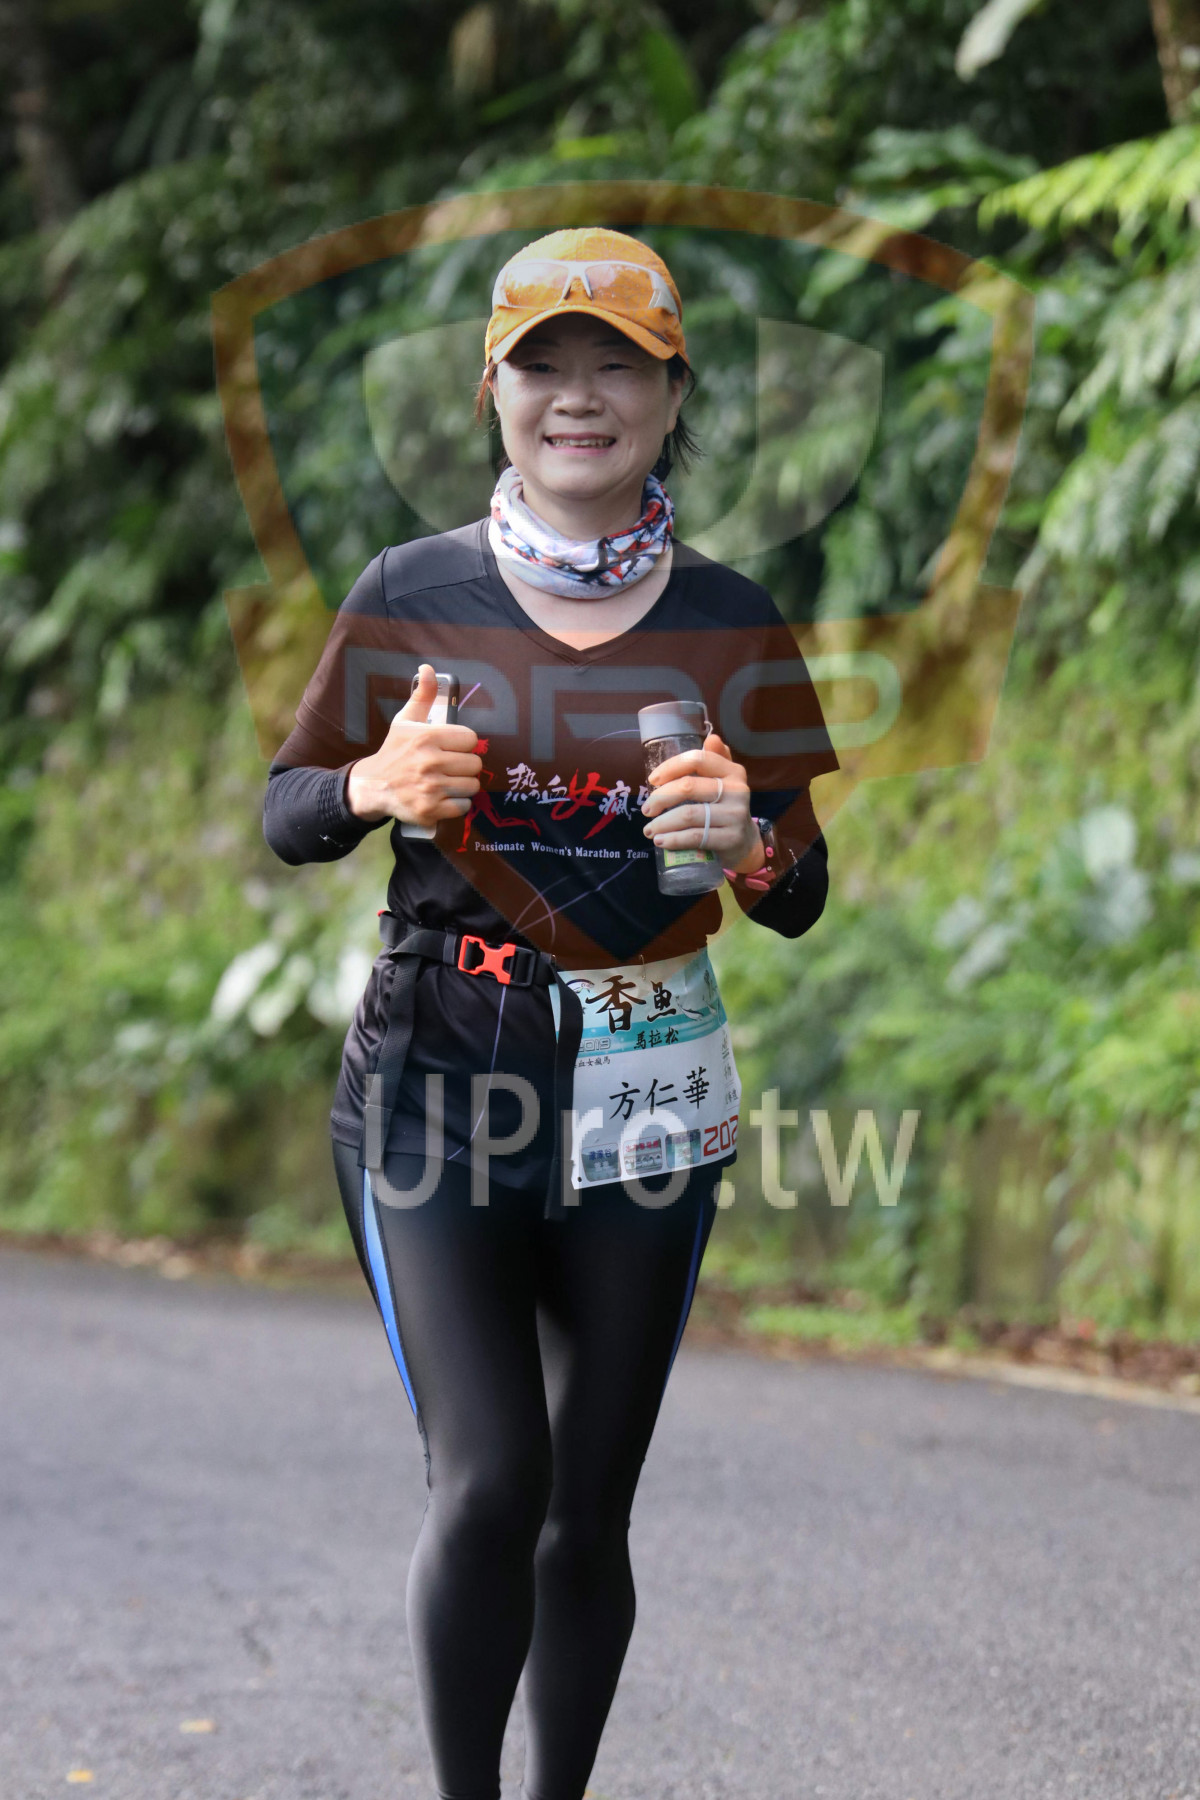 Passionate Women's Marathon Tea,'|